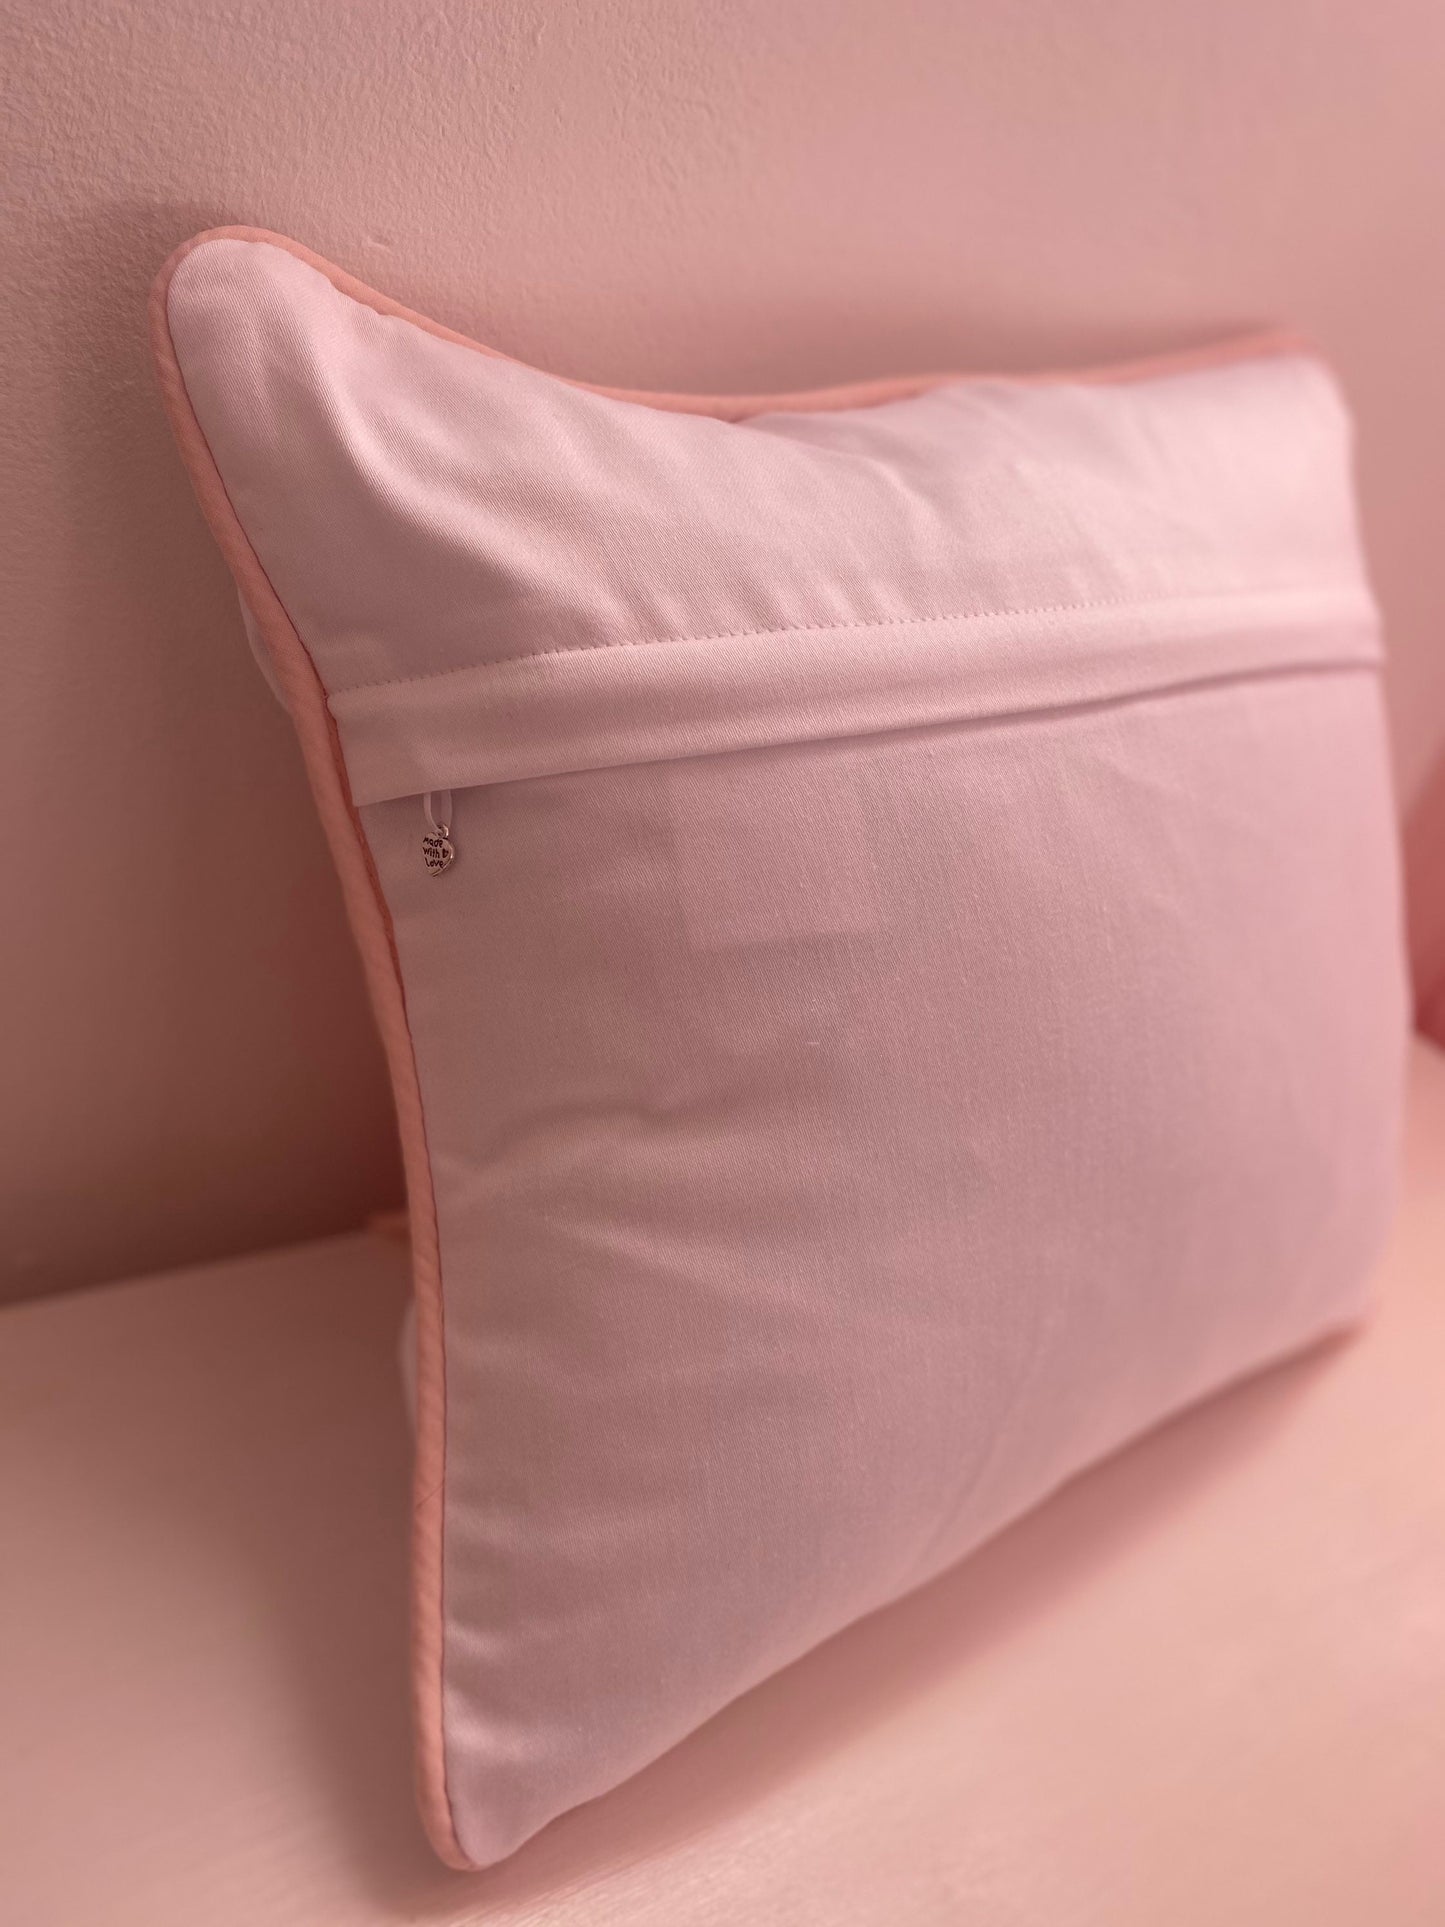 Blush Pink Bow Cushion